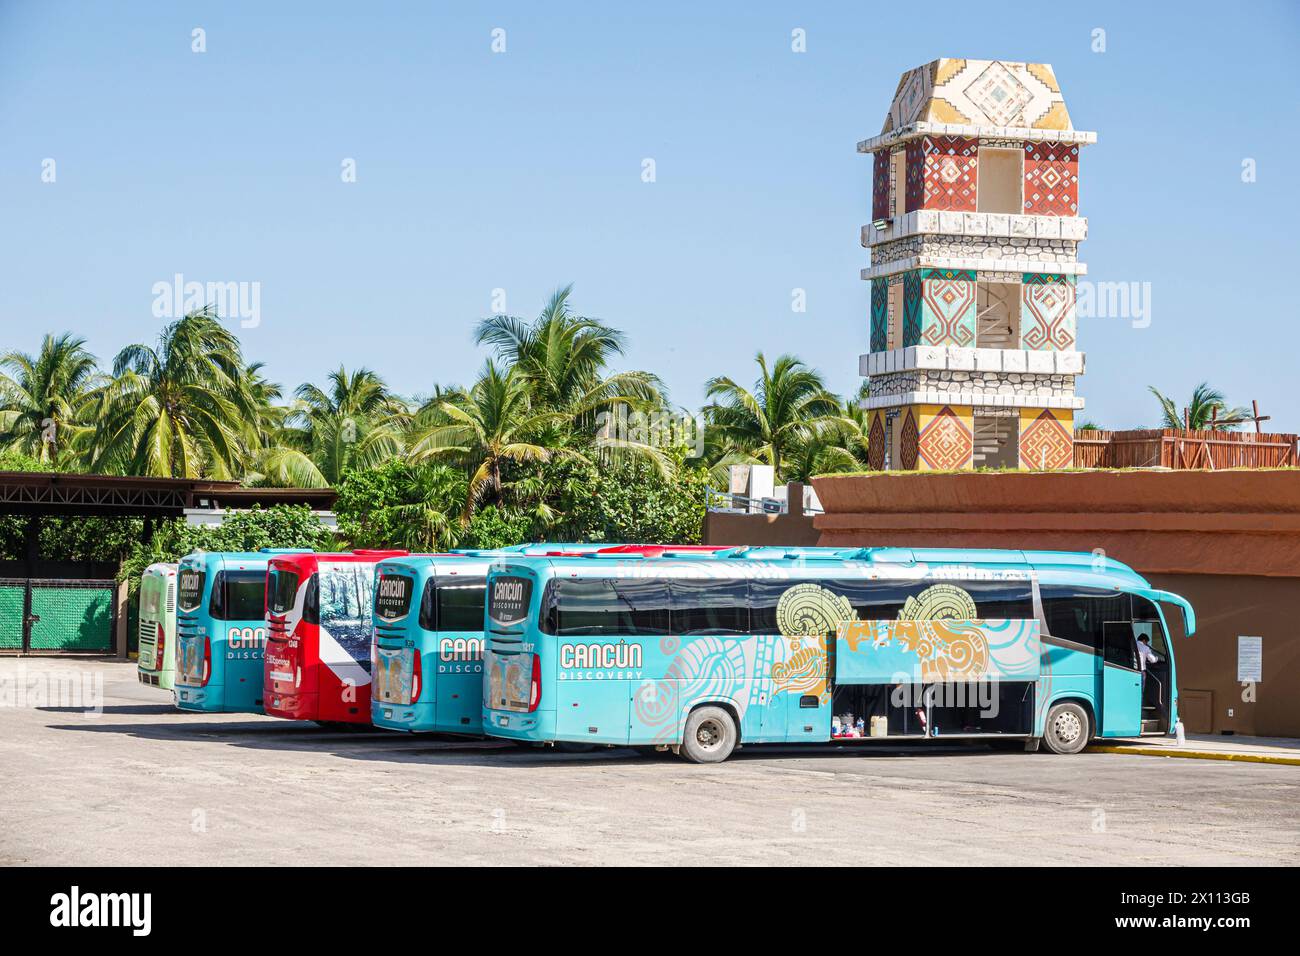 Costa Maya Mexique, Port de croisière, navire Norwegian Joy Cruise Line, itinéraire de 7 jours de la mer des Caraïbes, excursion en autocars de bus, visiteurs visitant Travel trav Banque D'Images